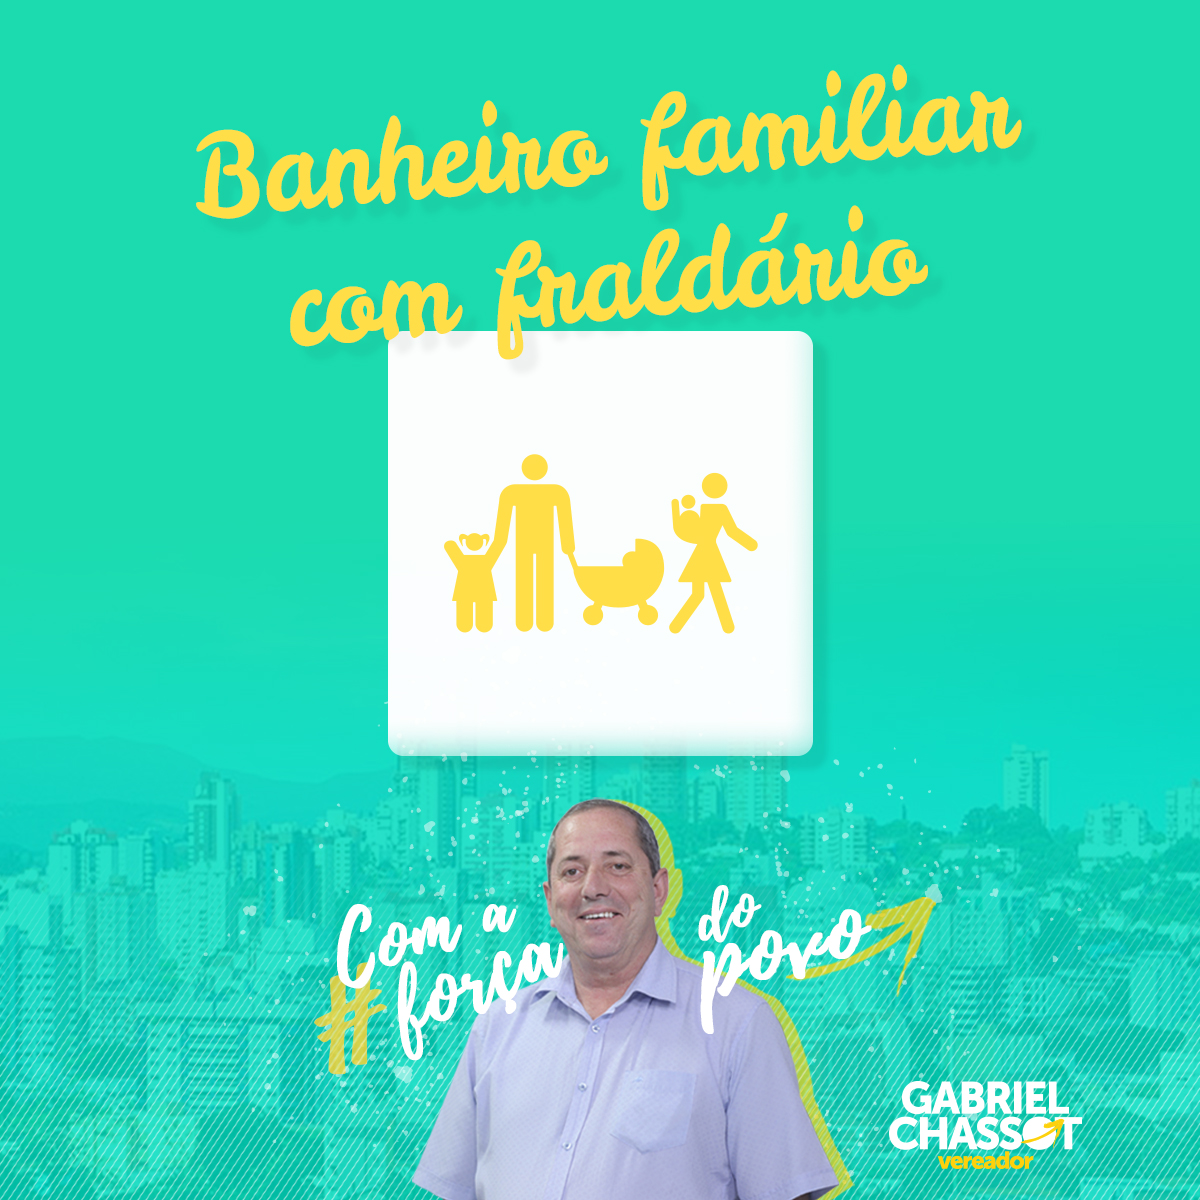 10/10/2018 – Vereador Gabriel Chassot apresenta projeto para banheiro familiar